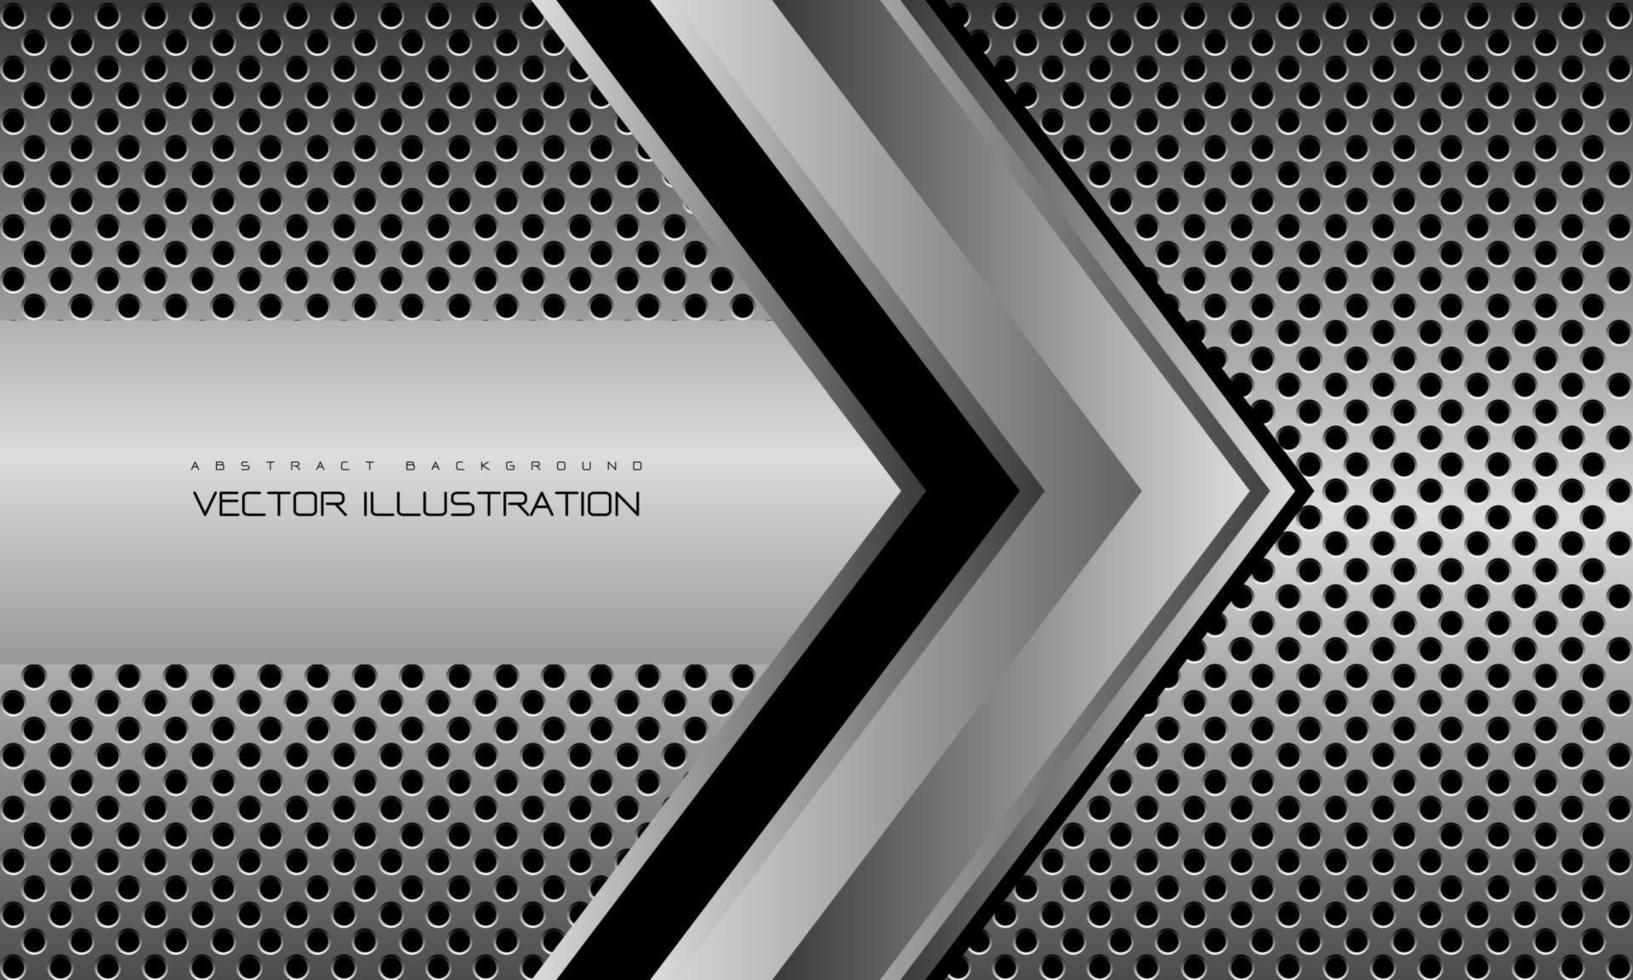 direção de seta cinza prata abstrata geométrica no design de malha de círculo vetor de fundo futurista de luxo moderno